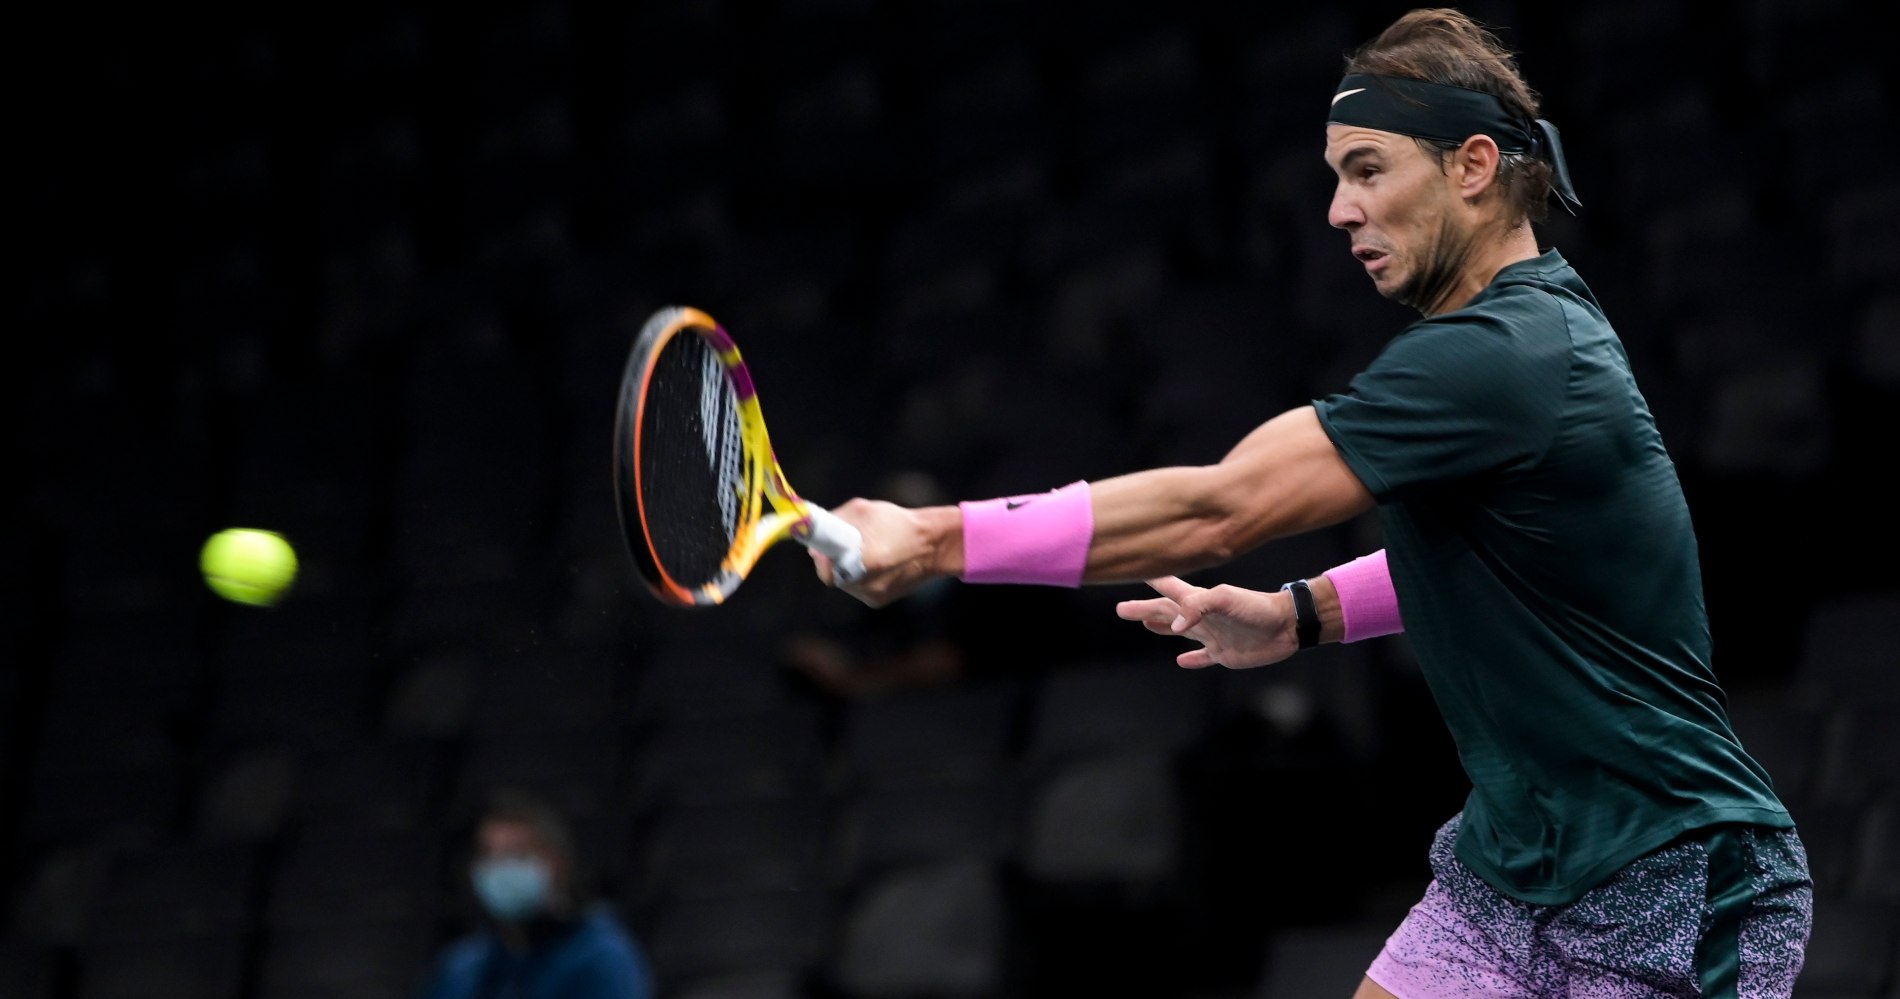 Мастерс теннис. Canada Masters Nadal 2019. Теннис мастерс сетка